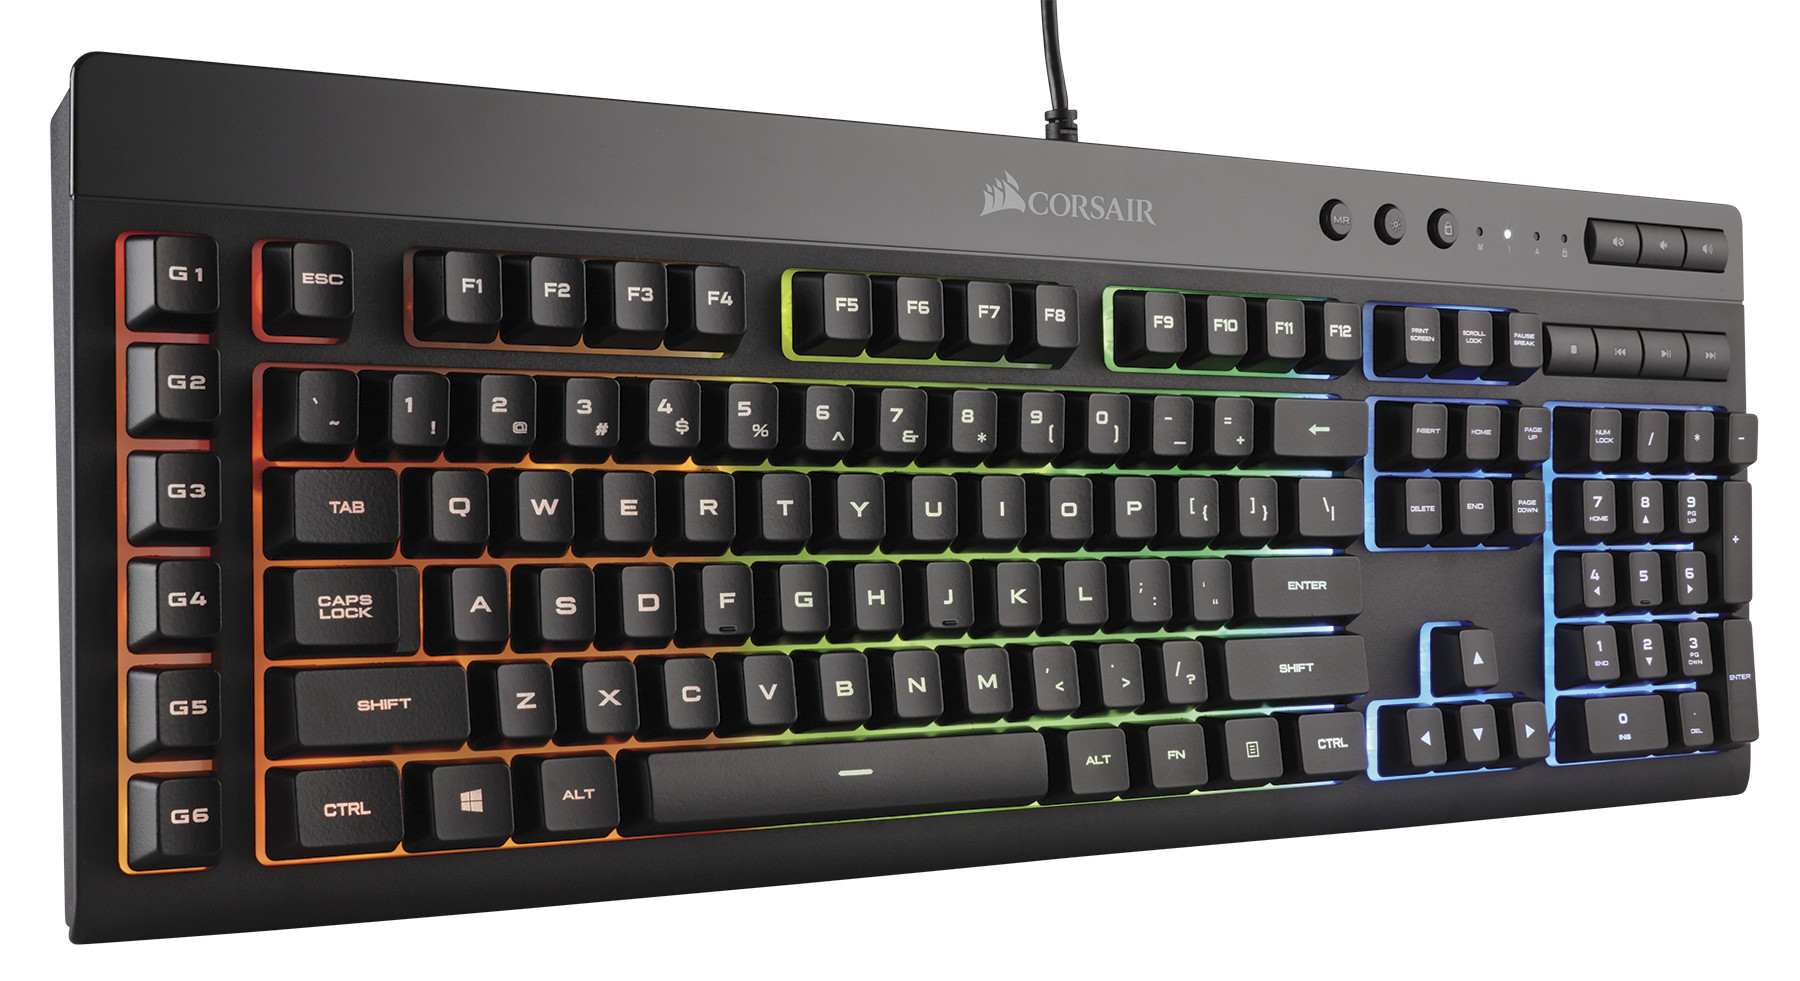 CORSAIR New HARPOON RGB Gaming Mouse and K55 Gaming Keyboard |